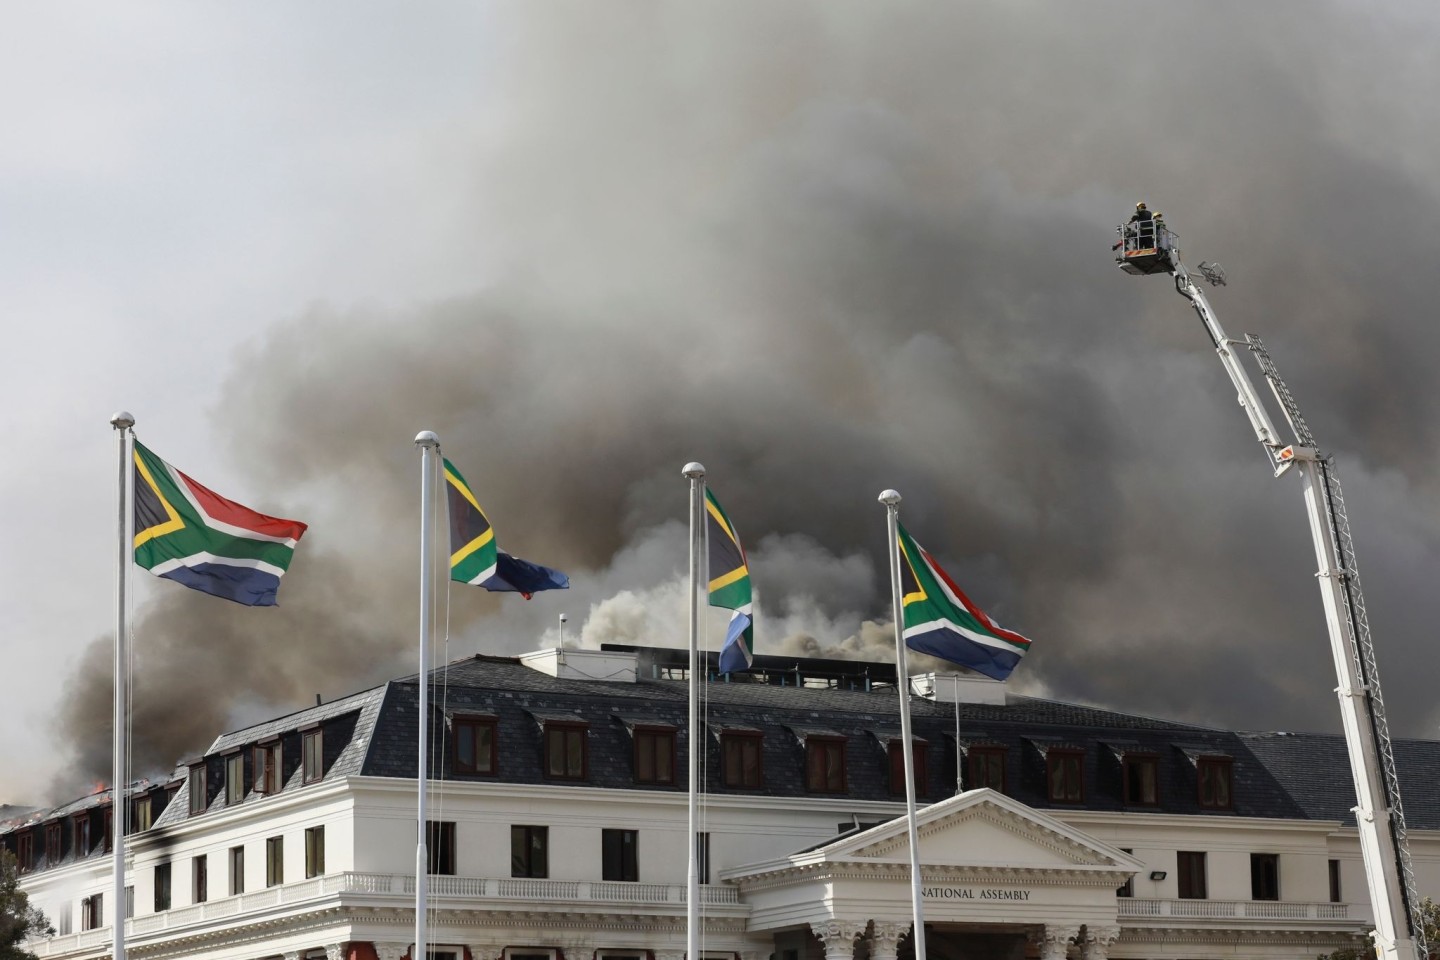 Ein Großbrand im Parlamentsgebäude von Südafrika in Kapstadt zerstörte am Neujahrswochenende den Sitzungssaal vollständig und brachte teile des Dachs zum einstürzen.